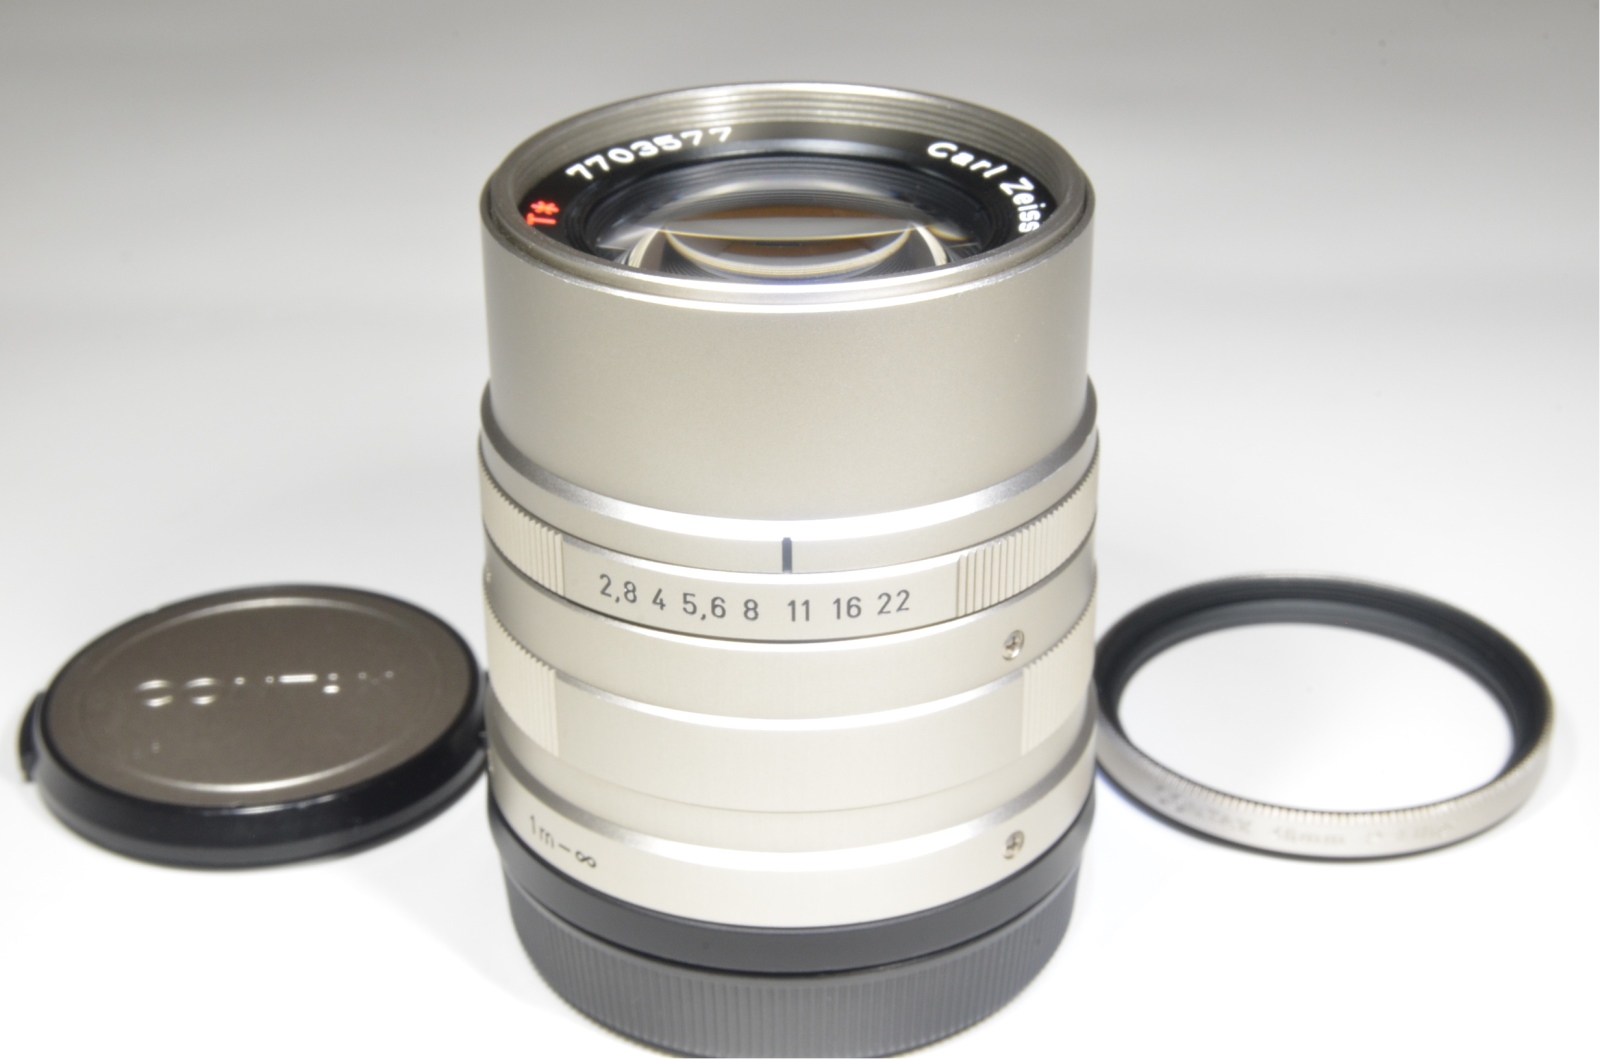 contax g2 camera / planar 45mm f2 / biogon 28 f2.8 / sonnar 90mm f2.8